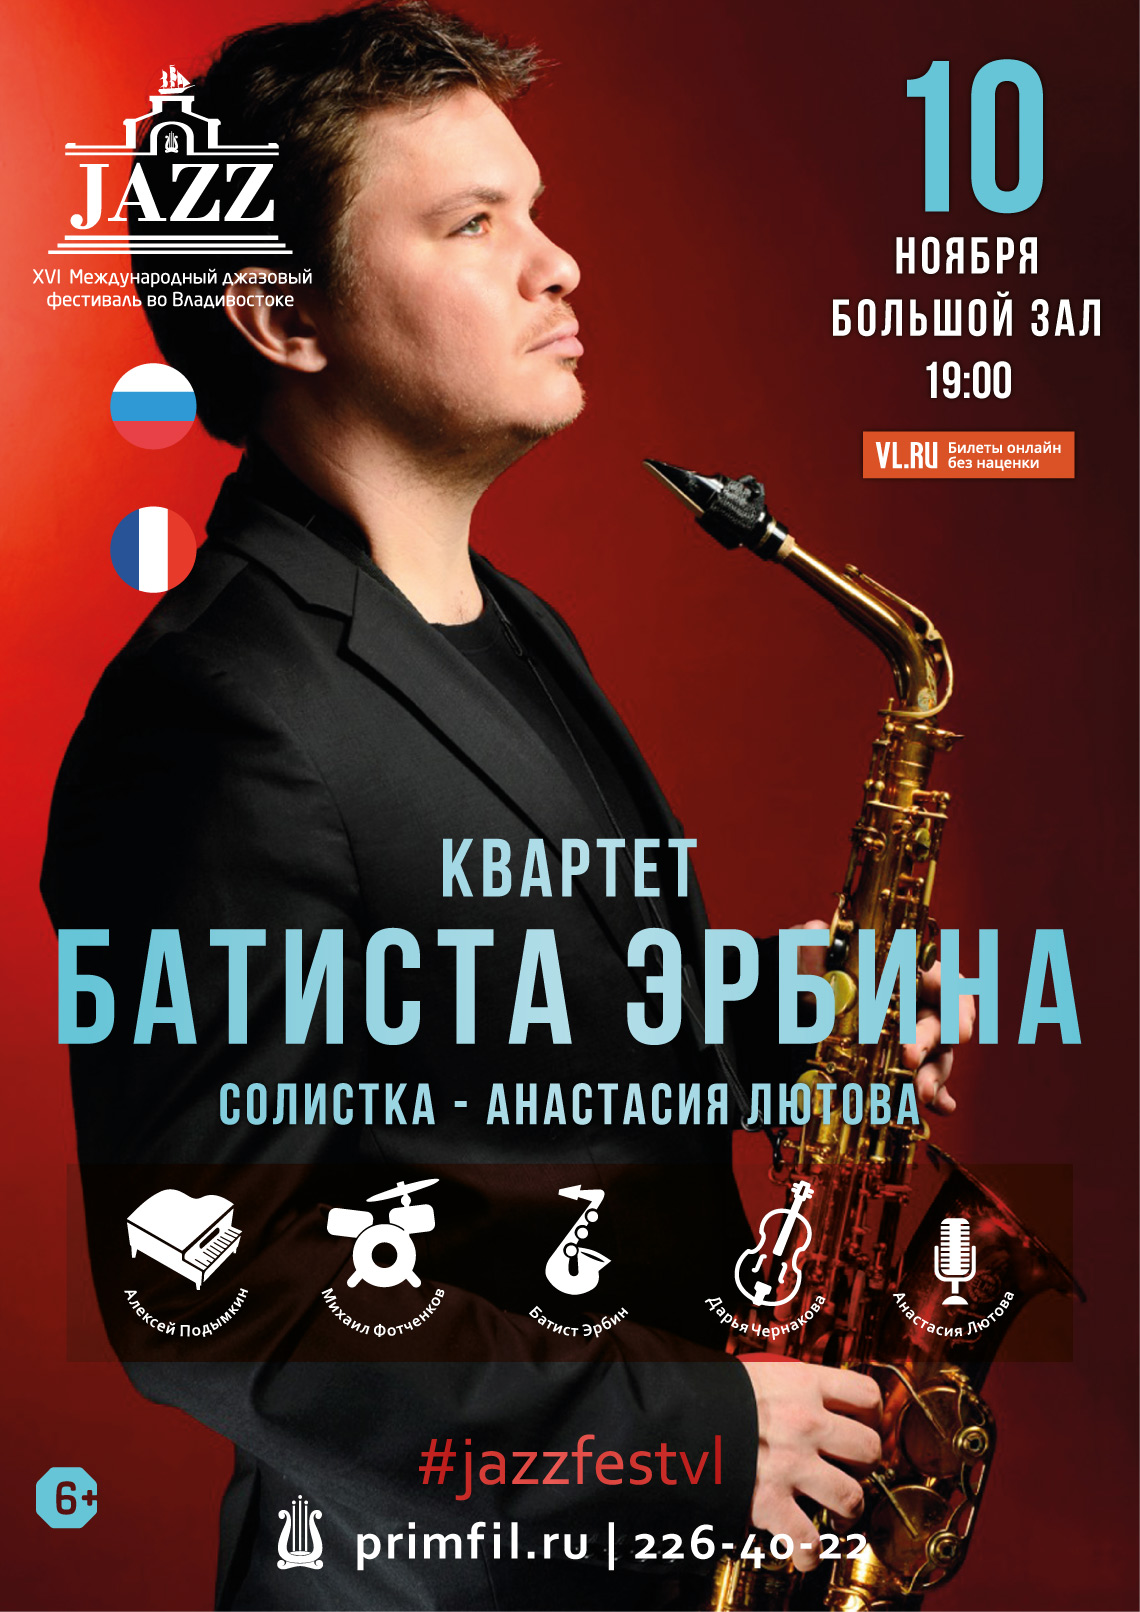 10 ноября XVI Международный джазовый фестиваль   Квартет Батиста Эрбина